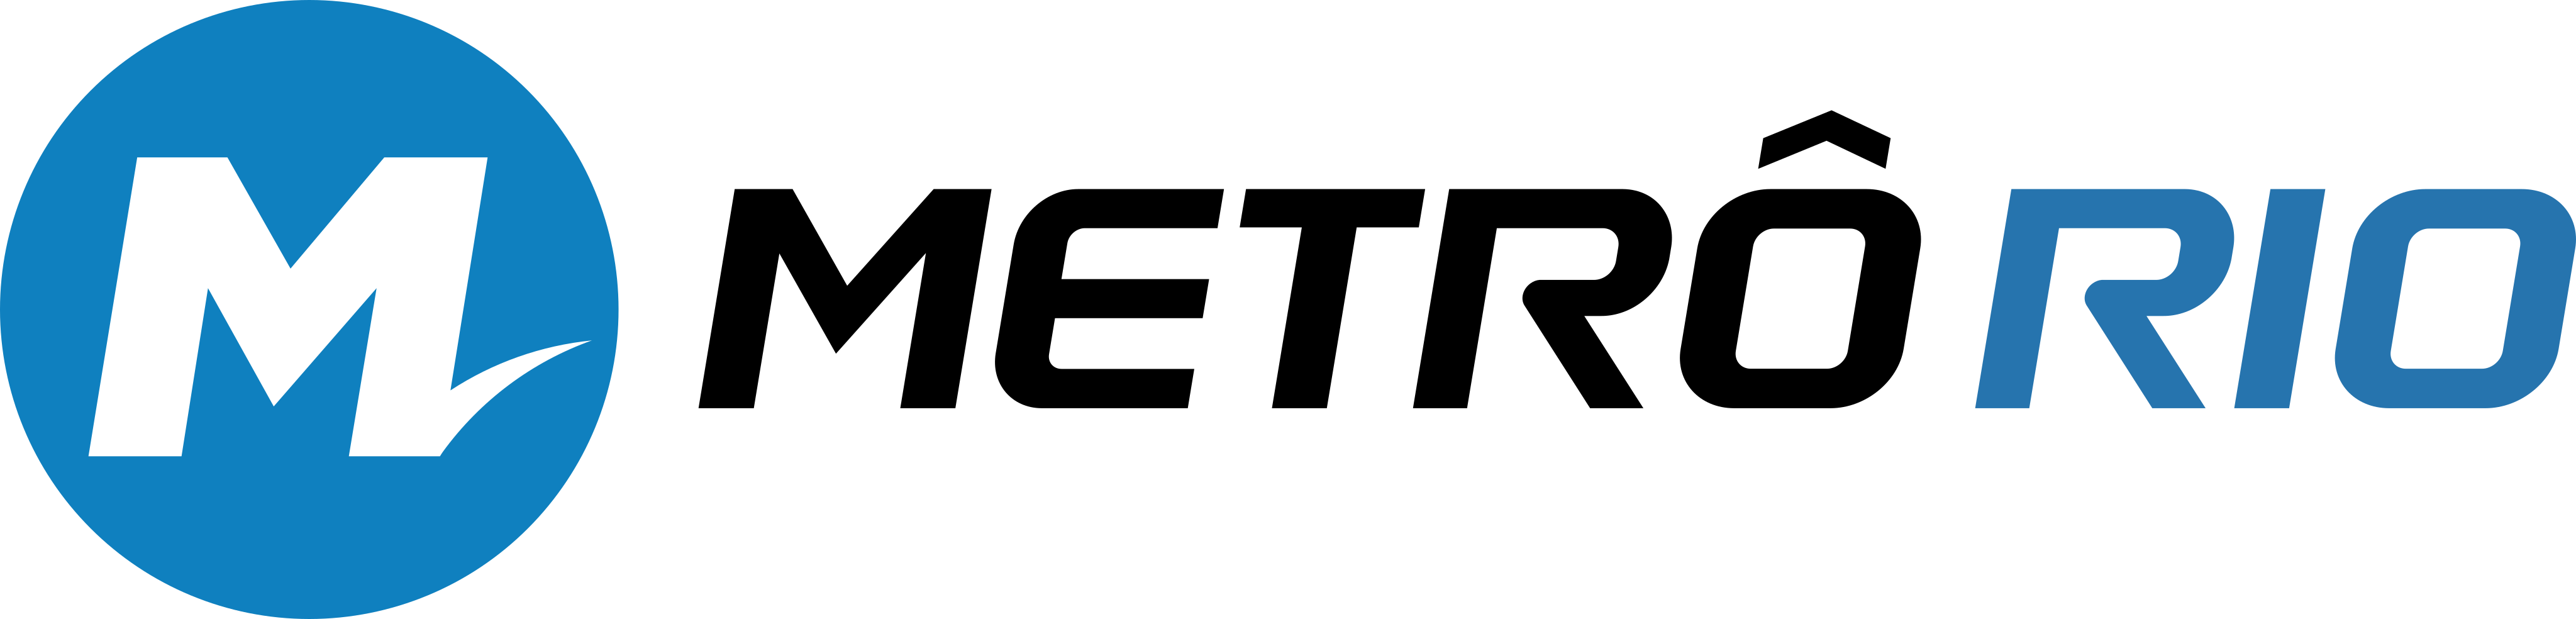 MetrôRio Logo.